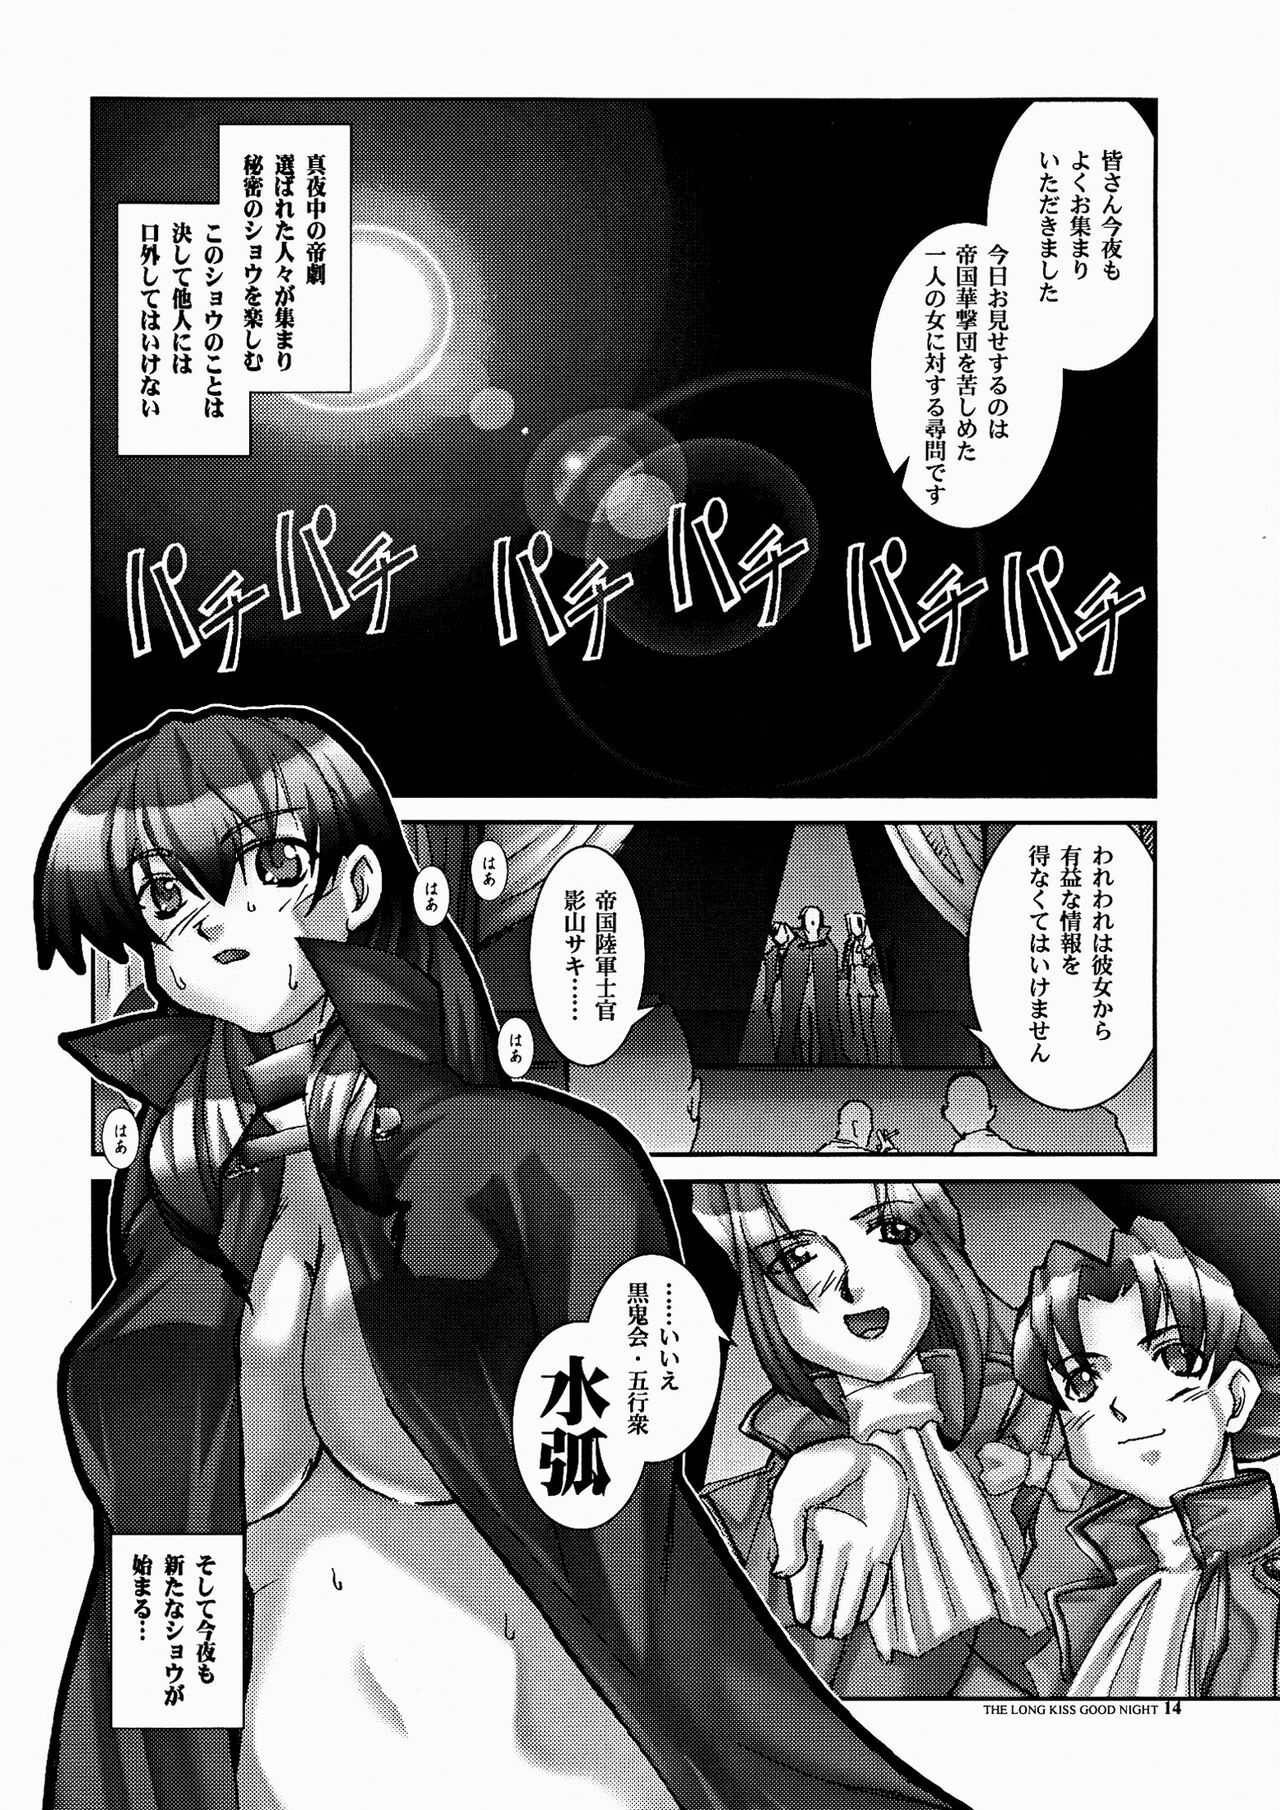 [HGH (HG Chagawa)] PLEATED GUNNER ZERO6 -The Long Kiss Good Night- (Sakura Taisen 2) page 14 full